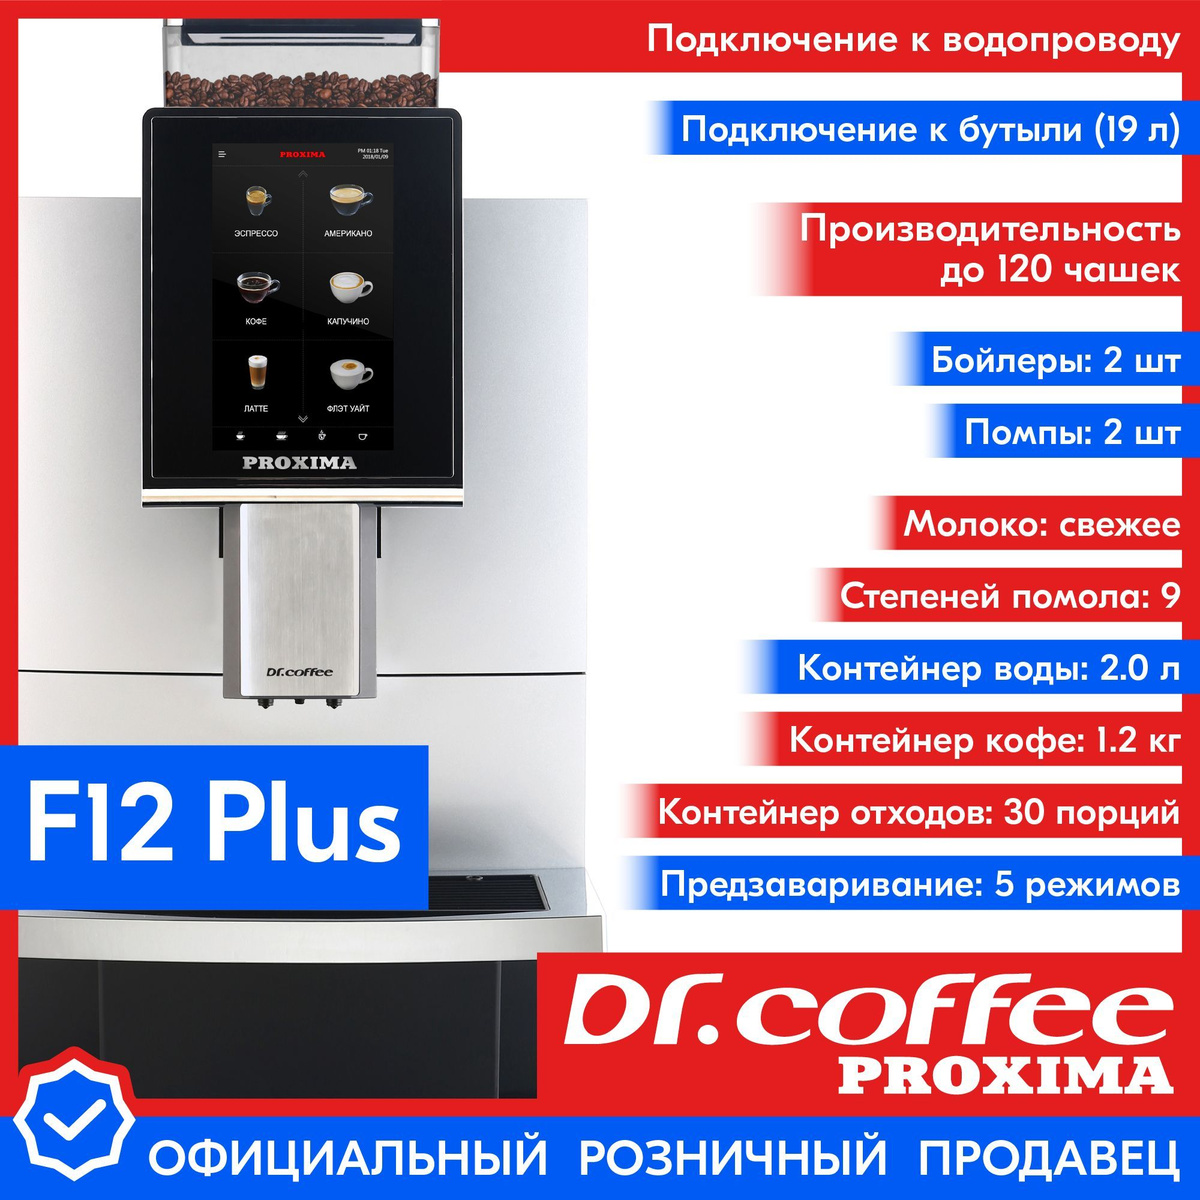 Профессиональная кофемашина Dr.coffee PROXIMA F12 Plus (с подключением к водопроводу)